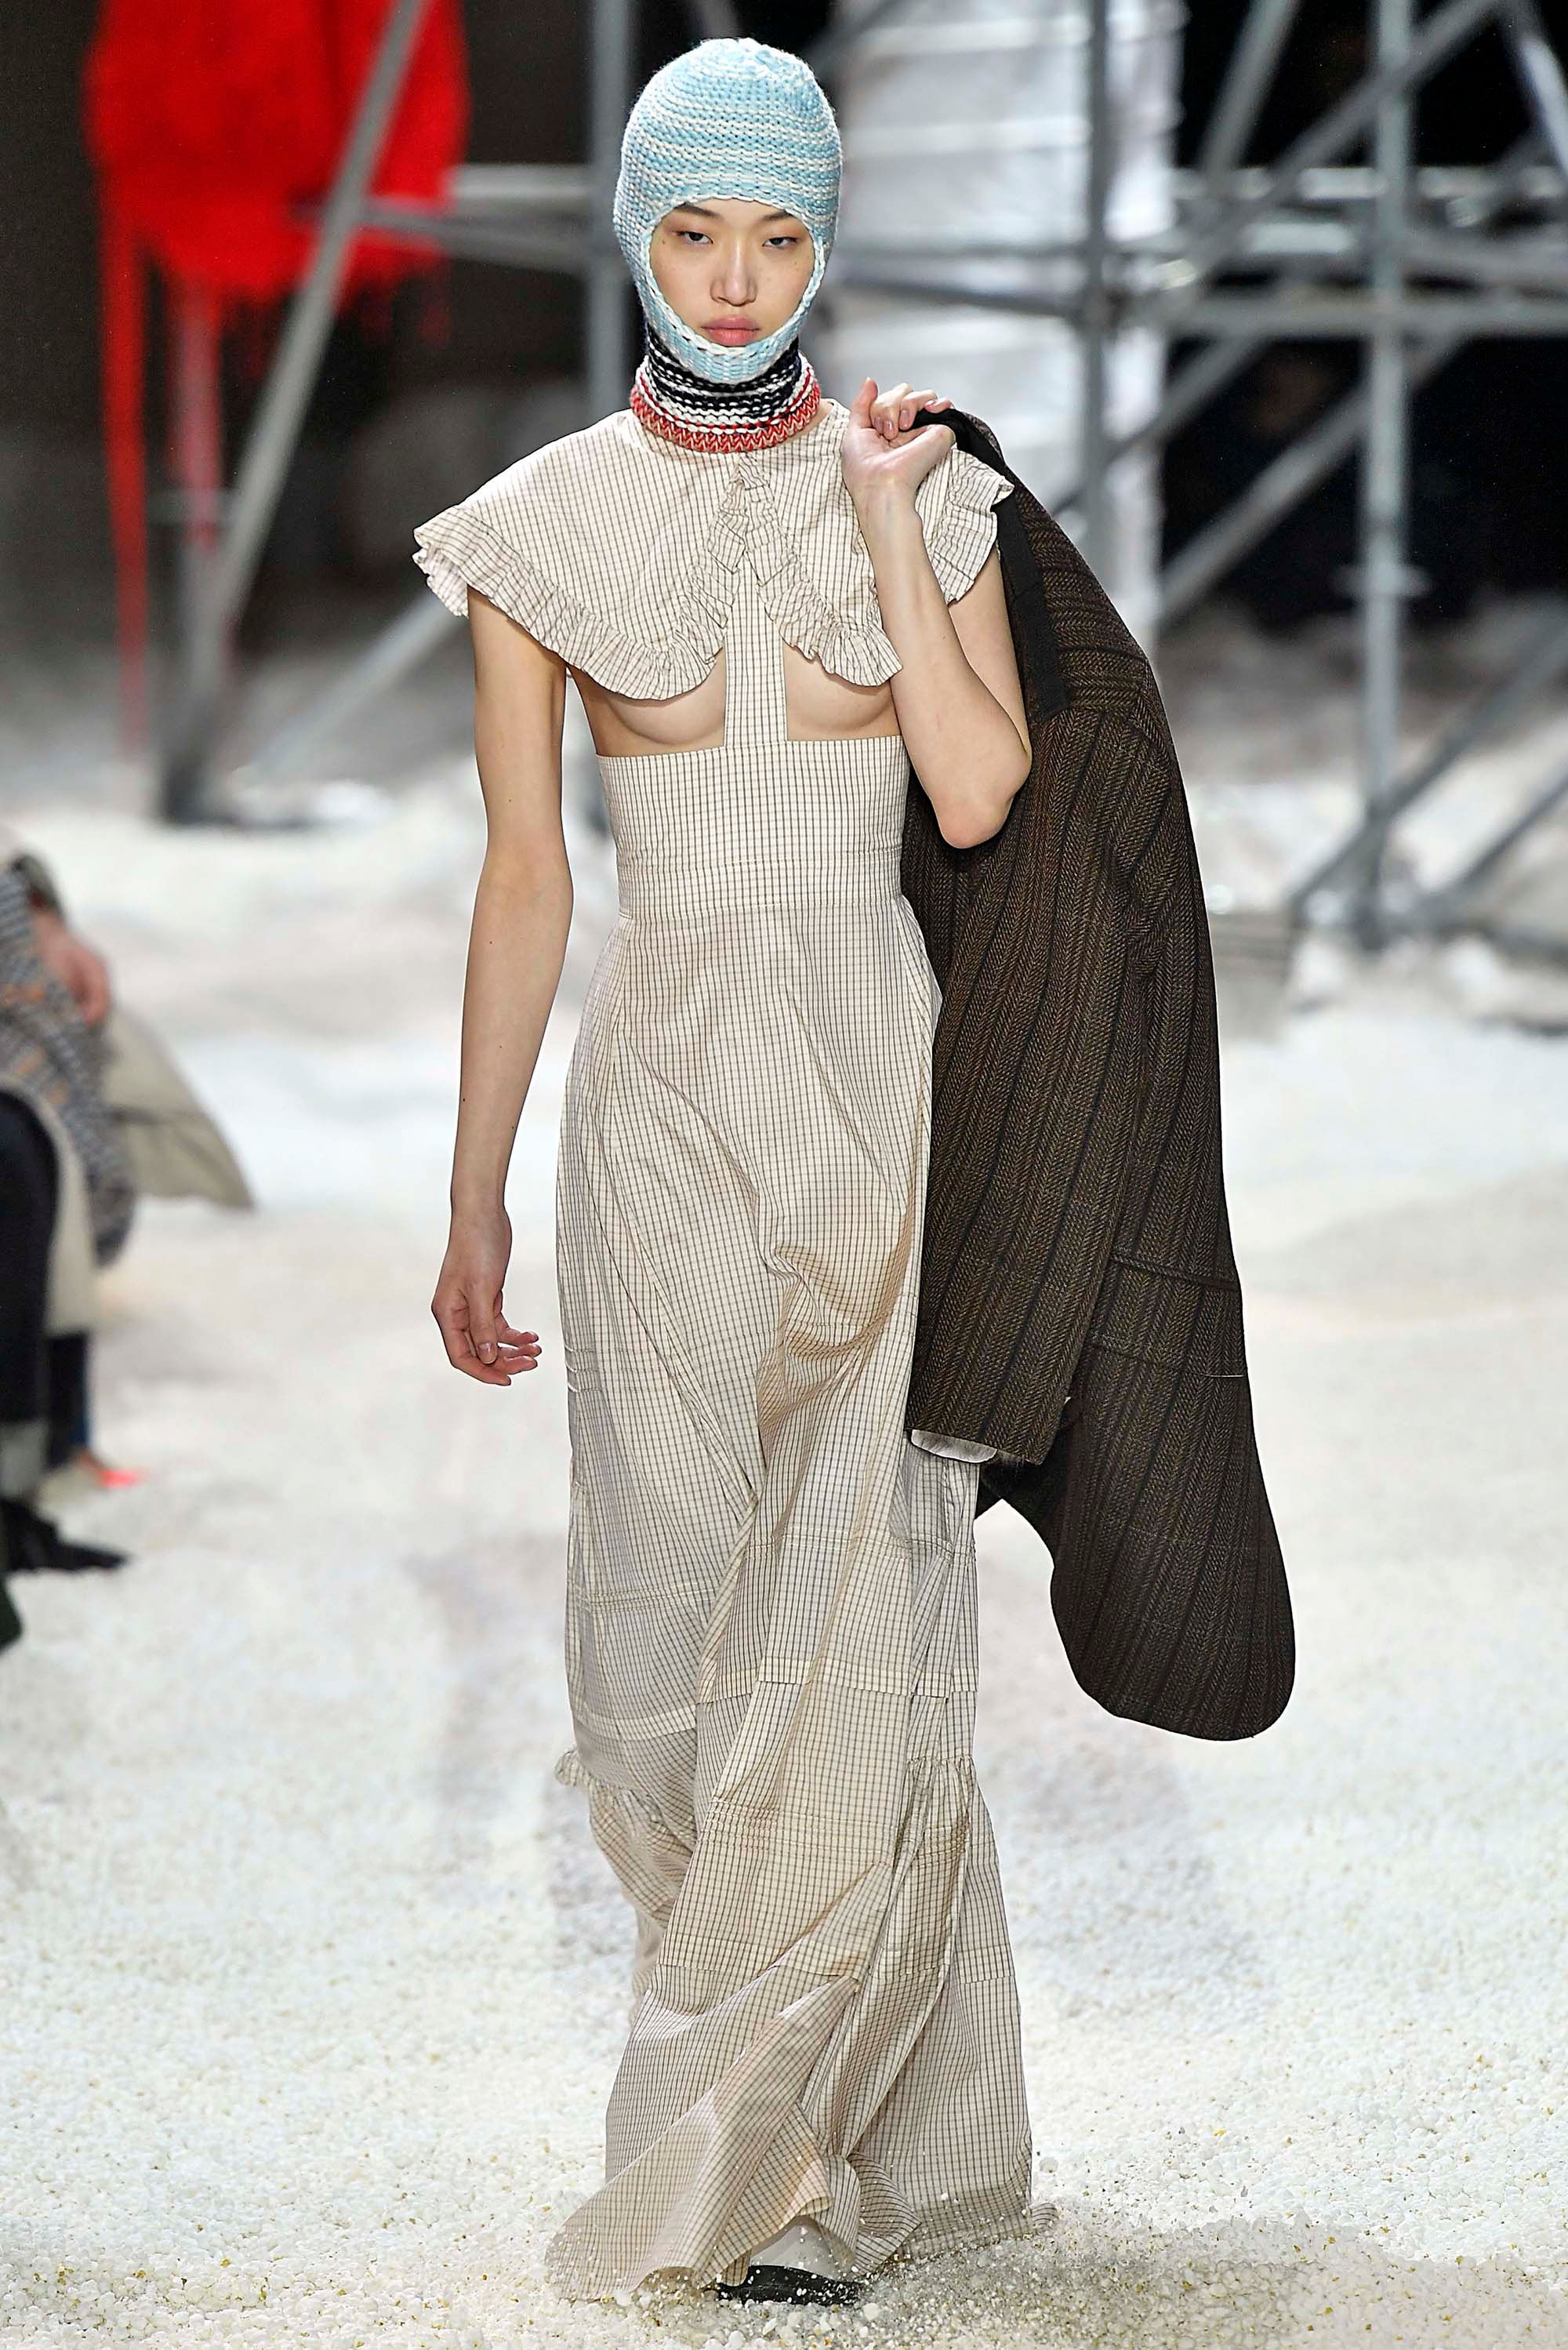 Calvin Klein 205W39NYC F/W 18 womenswear #10 - The Fashion Search Engine -  TAGWALK